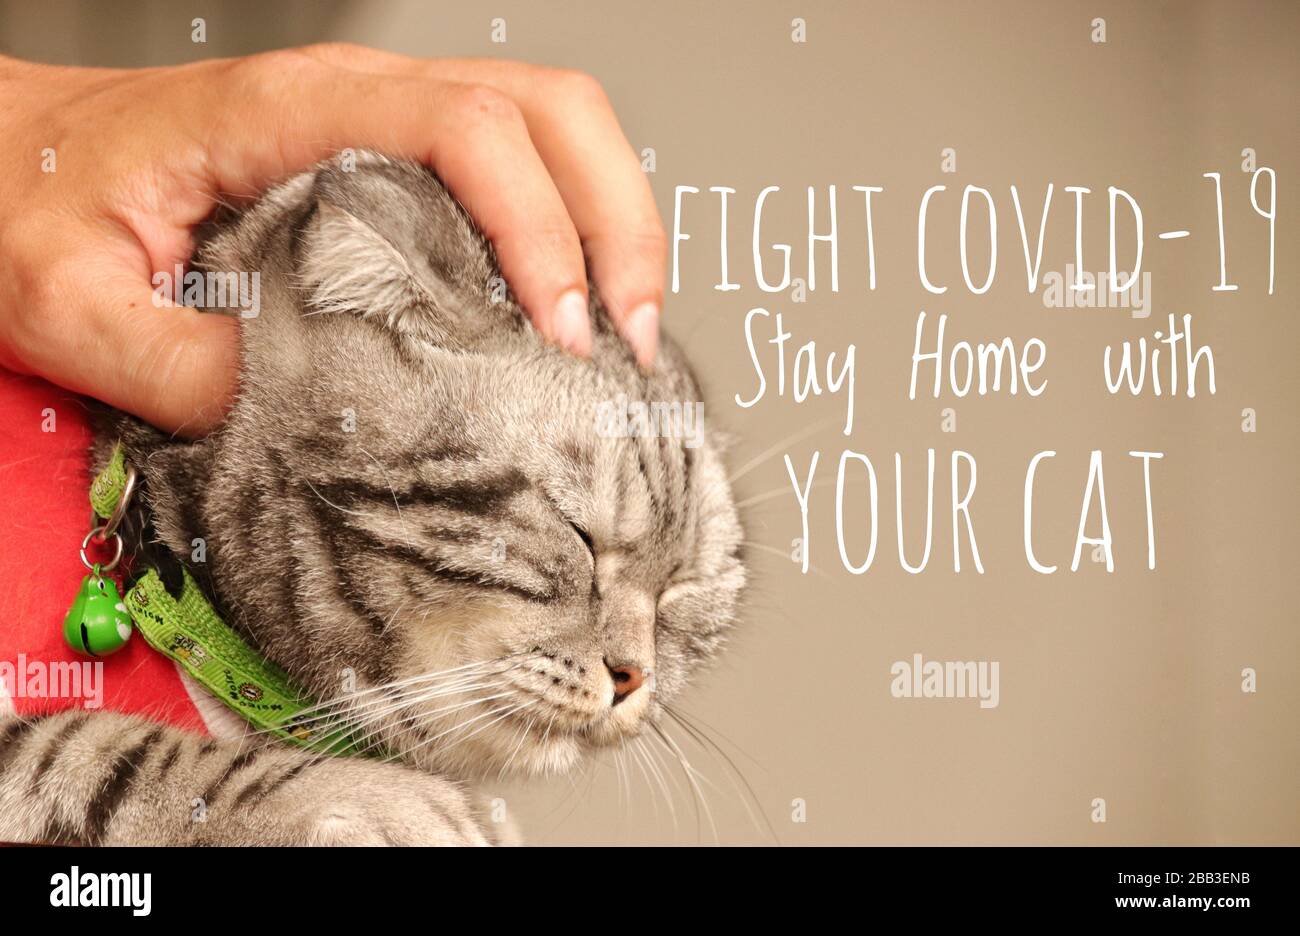 Süße Katze und Botschaft, um mit Ihrer Katze zu Hause zu bleiben und vor dem Kovid-19-Ausbruch sicher zu bleiben Stockfoto